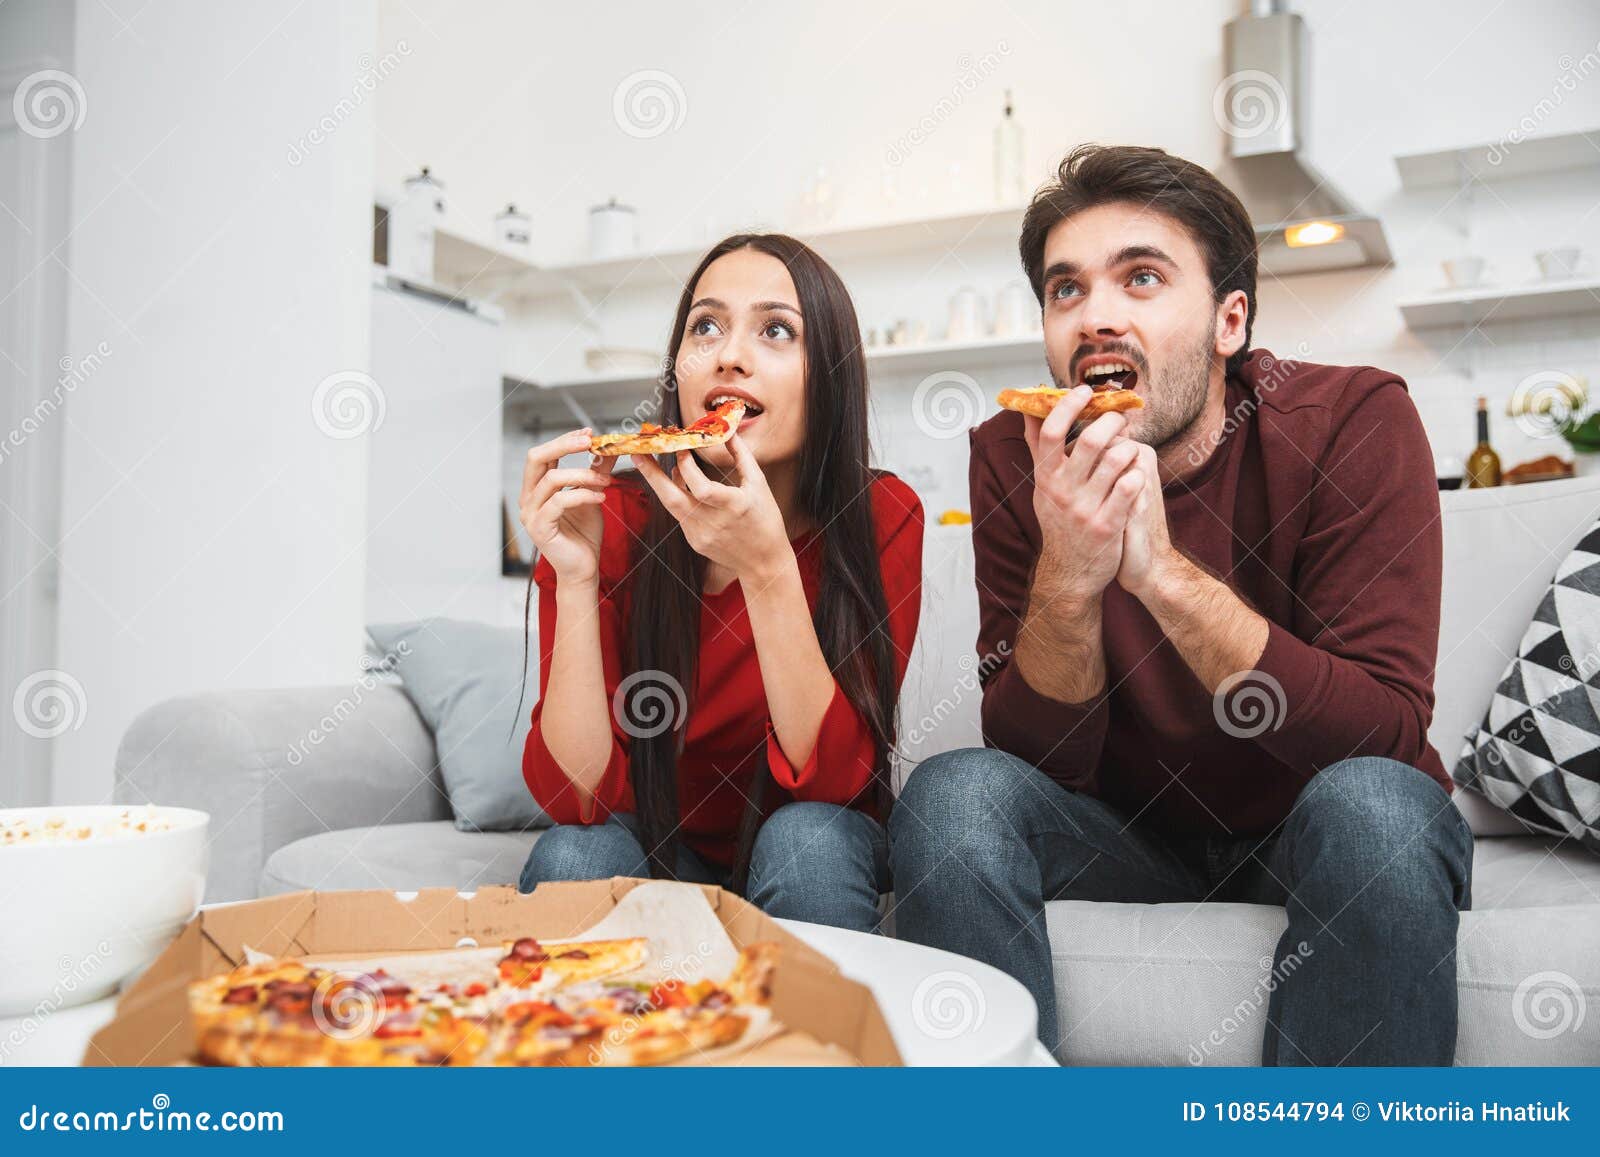 фото у телевизора с пиццей фото 72